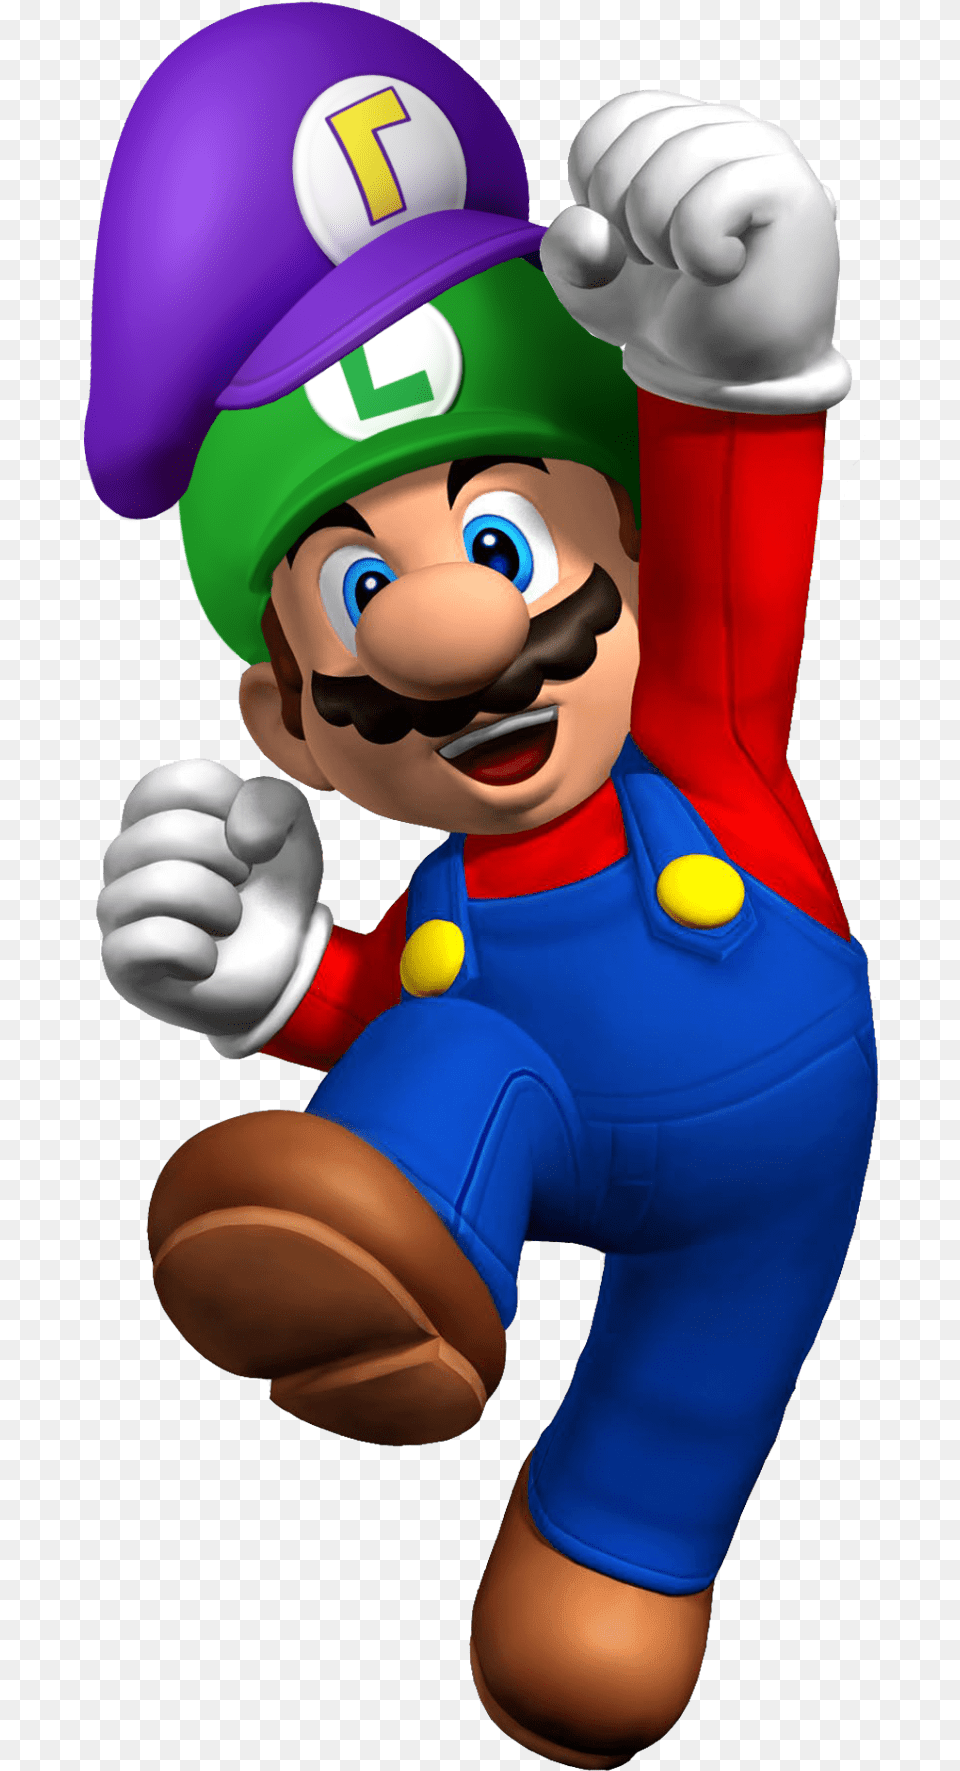 Waluigis Hat On Luigis Hat On Mario Imagenes Mario Bros, Baby, Person, Game, Super Mario Free Png